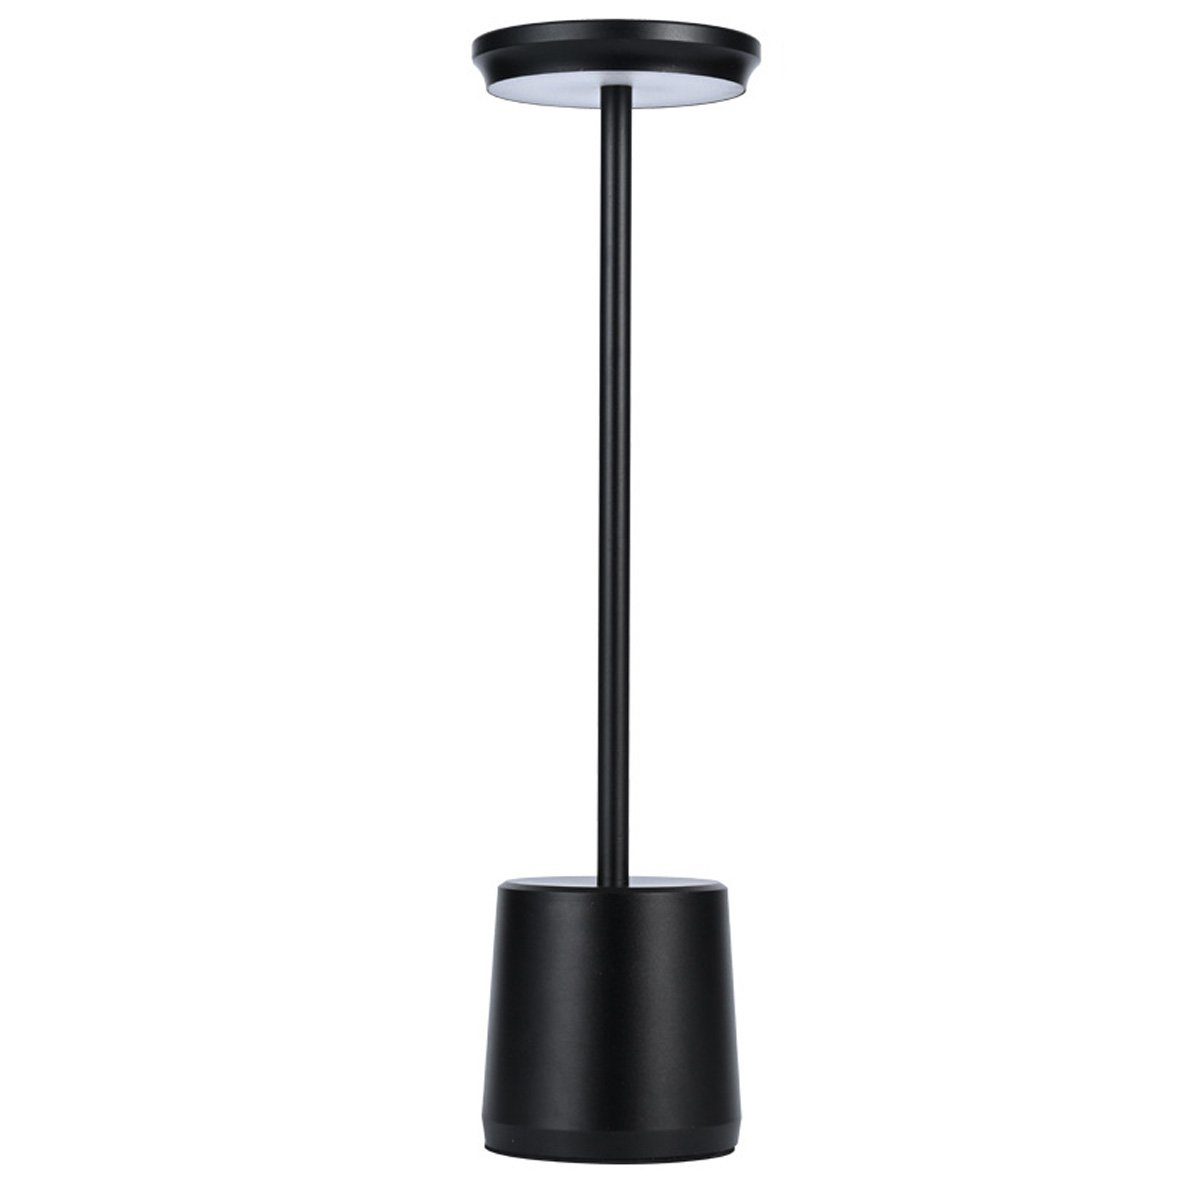 DOPWii LED Schreibtischlampe 1.6W Schreibtischlampe,490*340mm Lampenkörper aus Aluminium,Dimmbar Schwarz